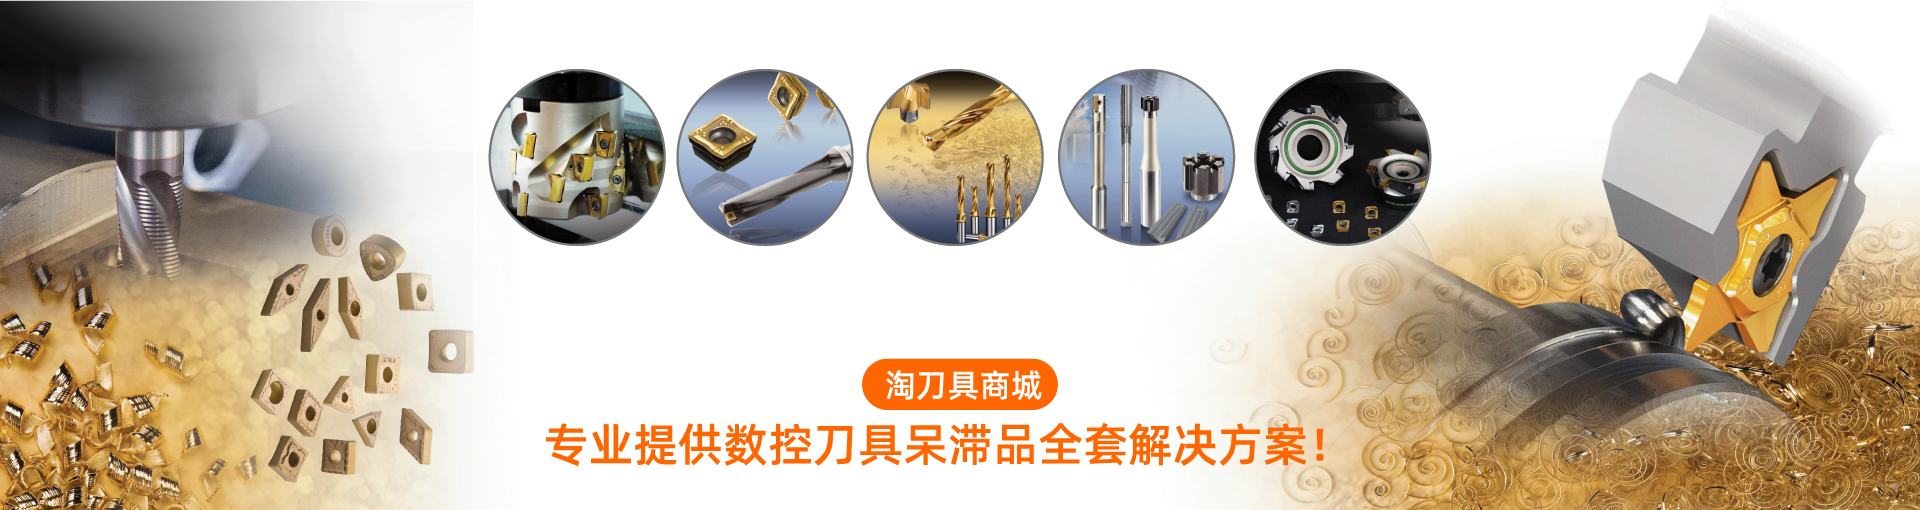 淘刀具商城平台上产品有铰刀、数控刀具、刀柄、铣刀等。